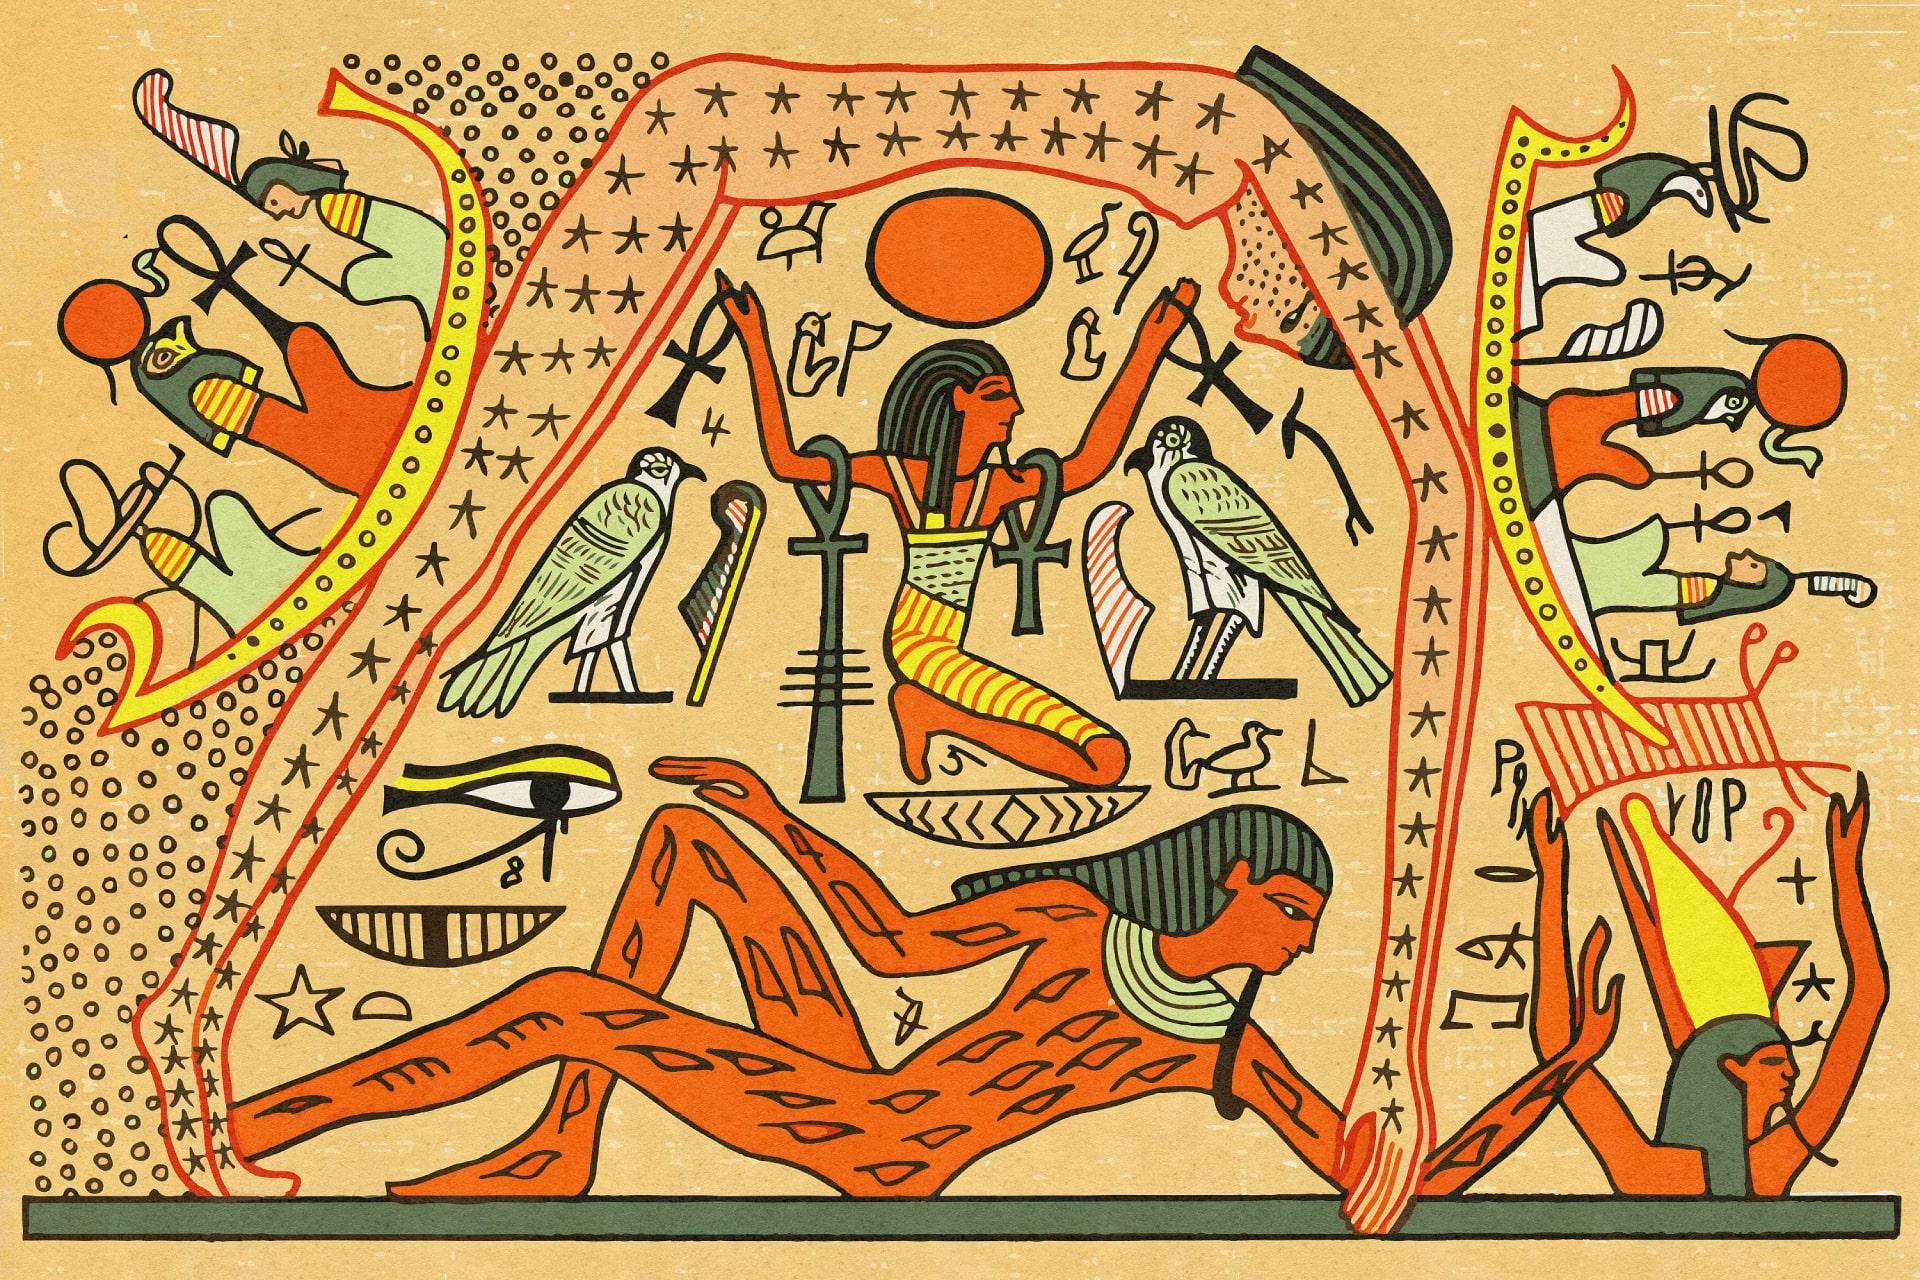 نوت، الهه آسمان در مصر باستان به شکل زنی ستاره ای